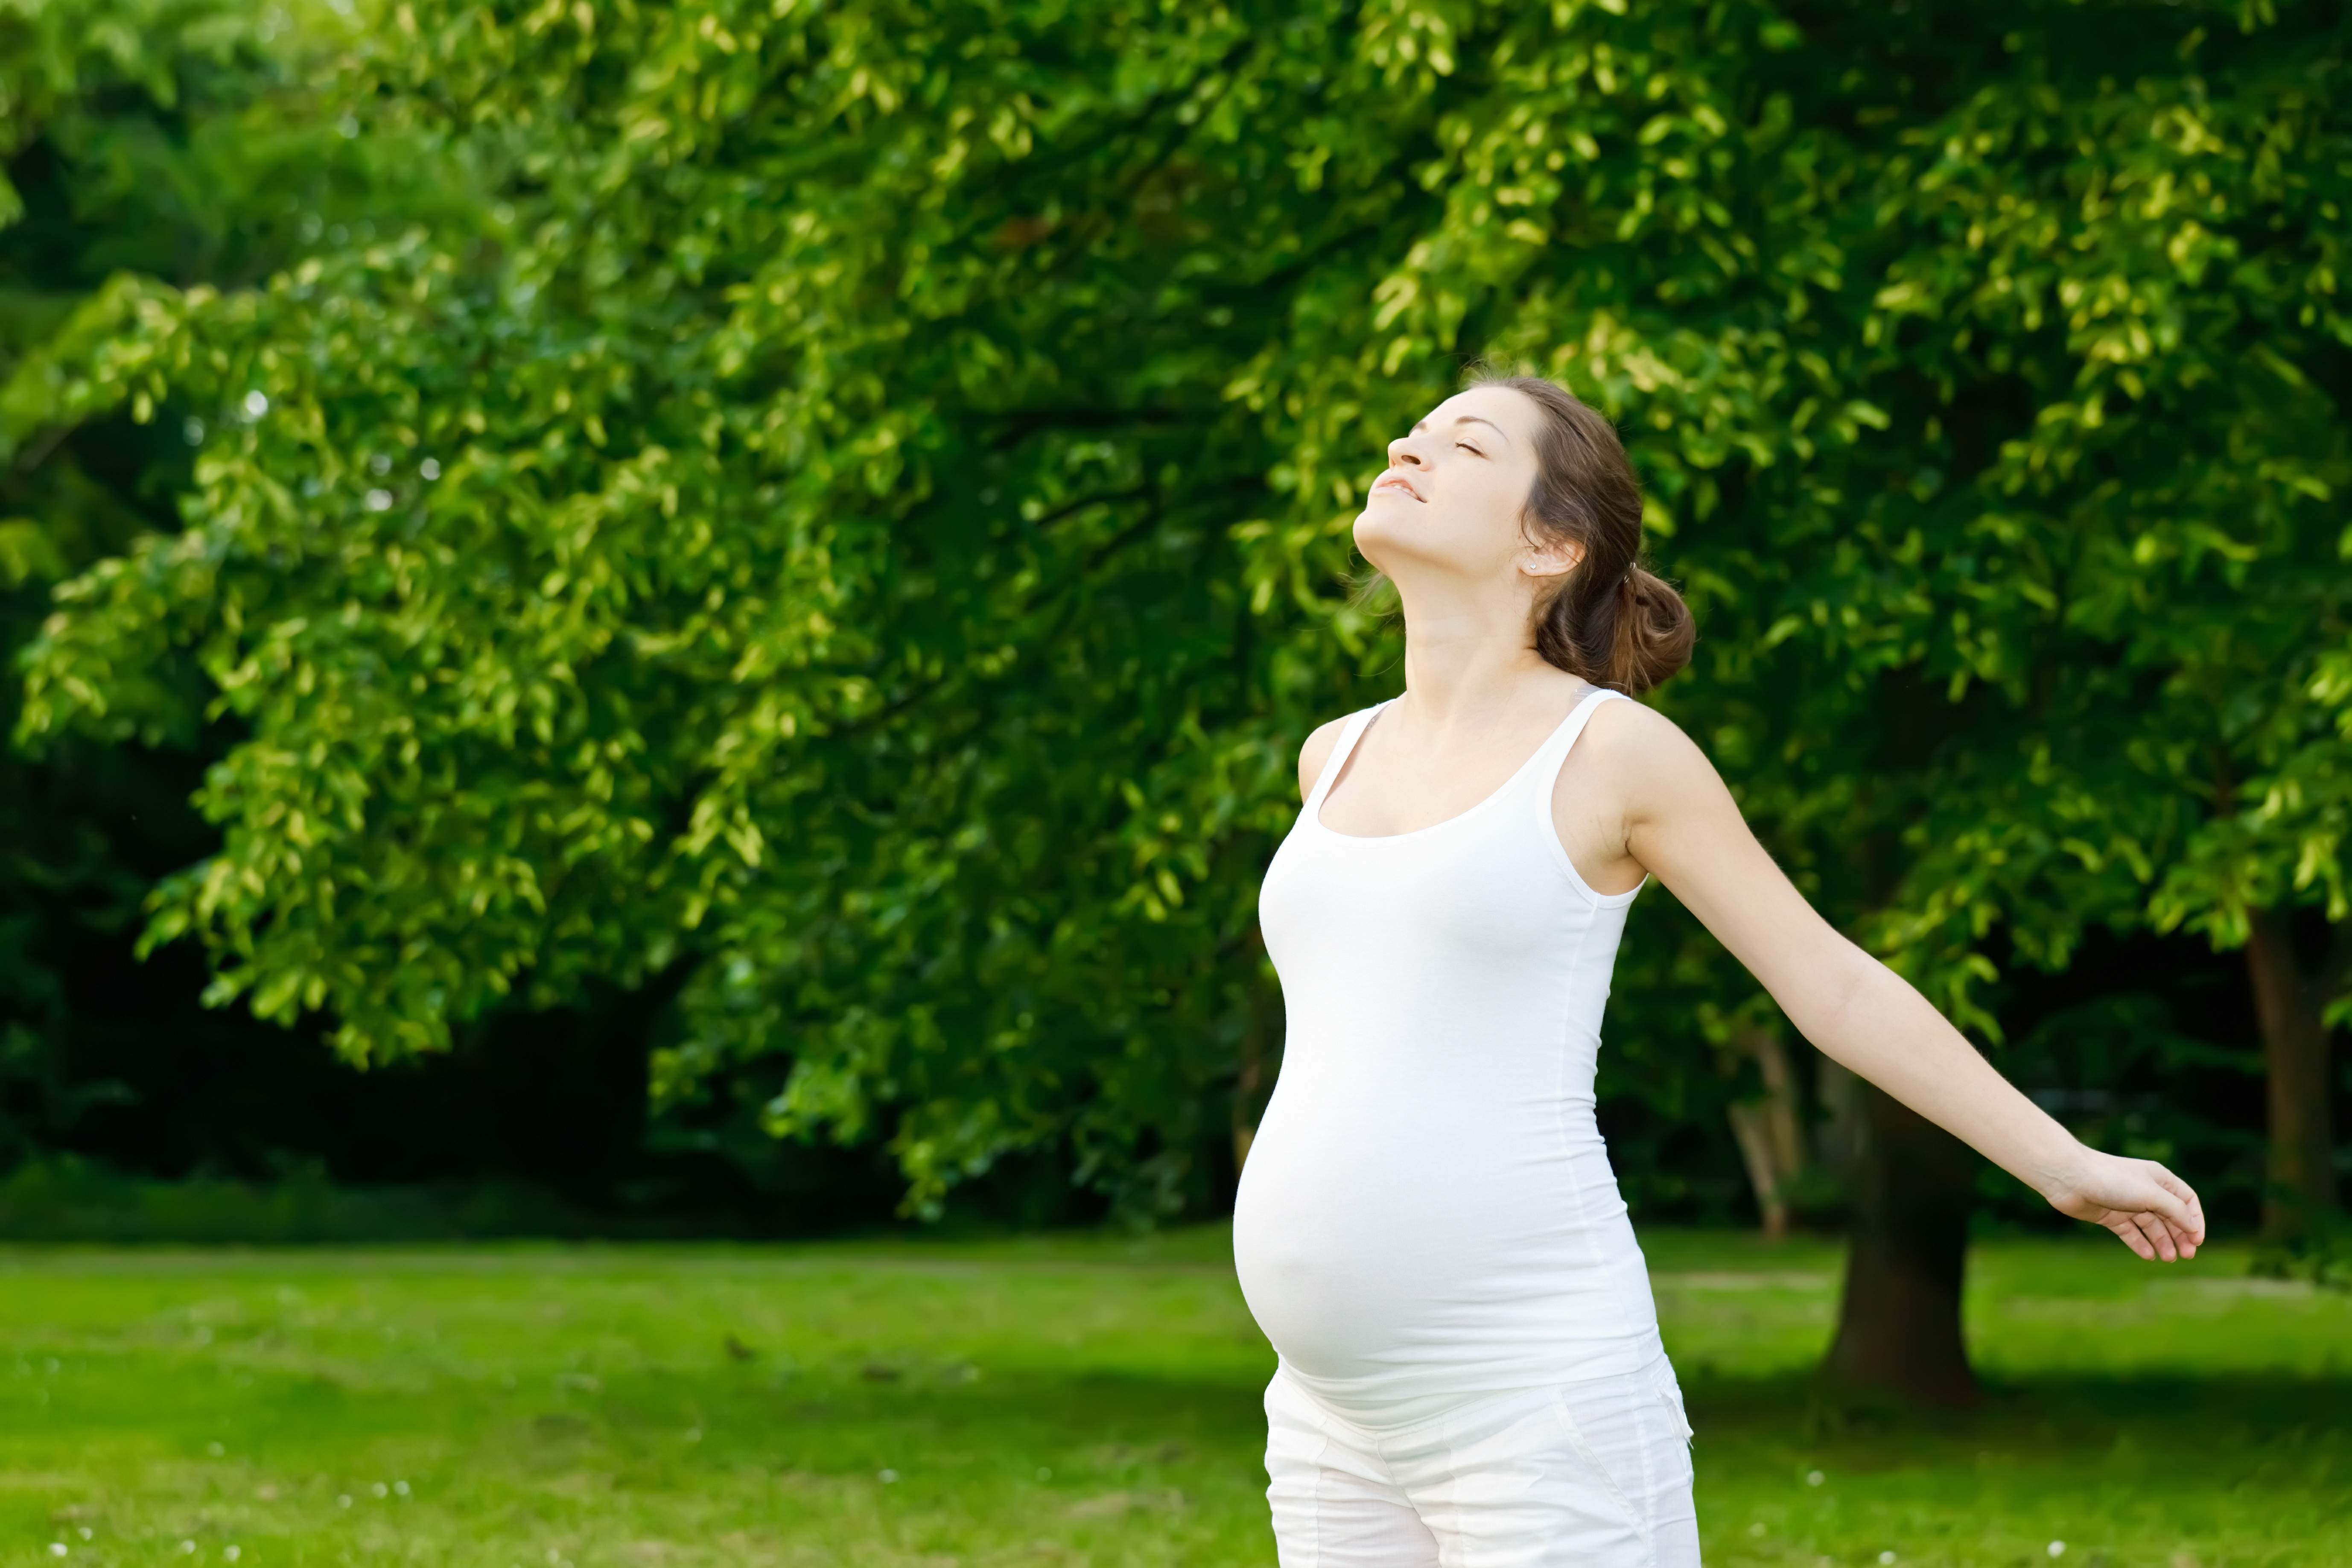 Bà bầu mang thai tháng thứ 7 nên ăn gì?